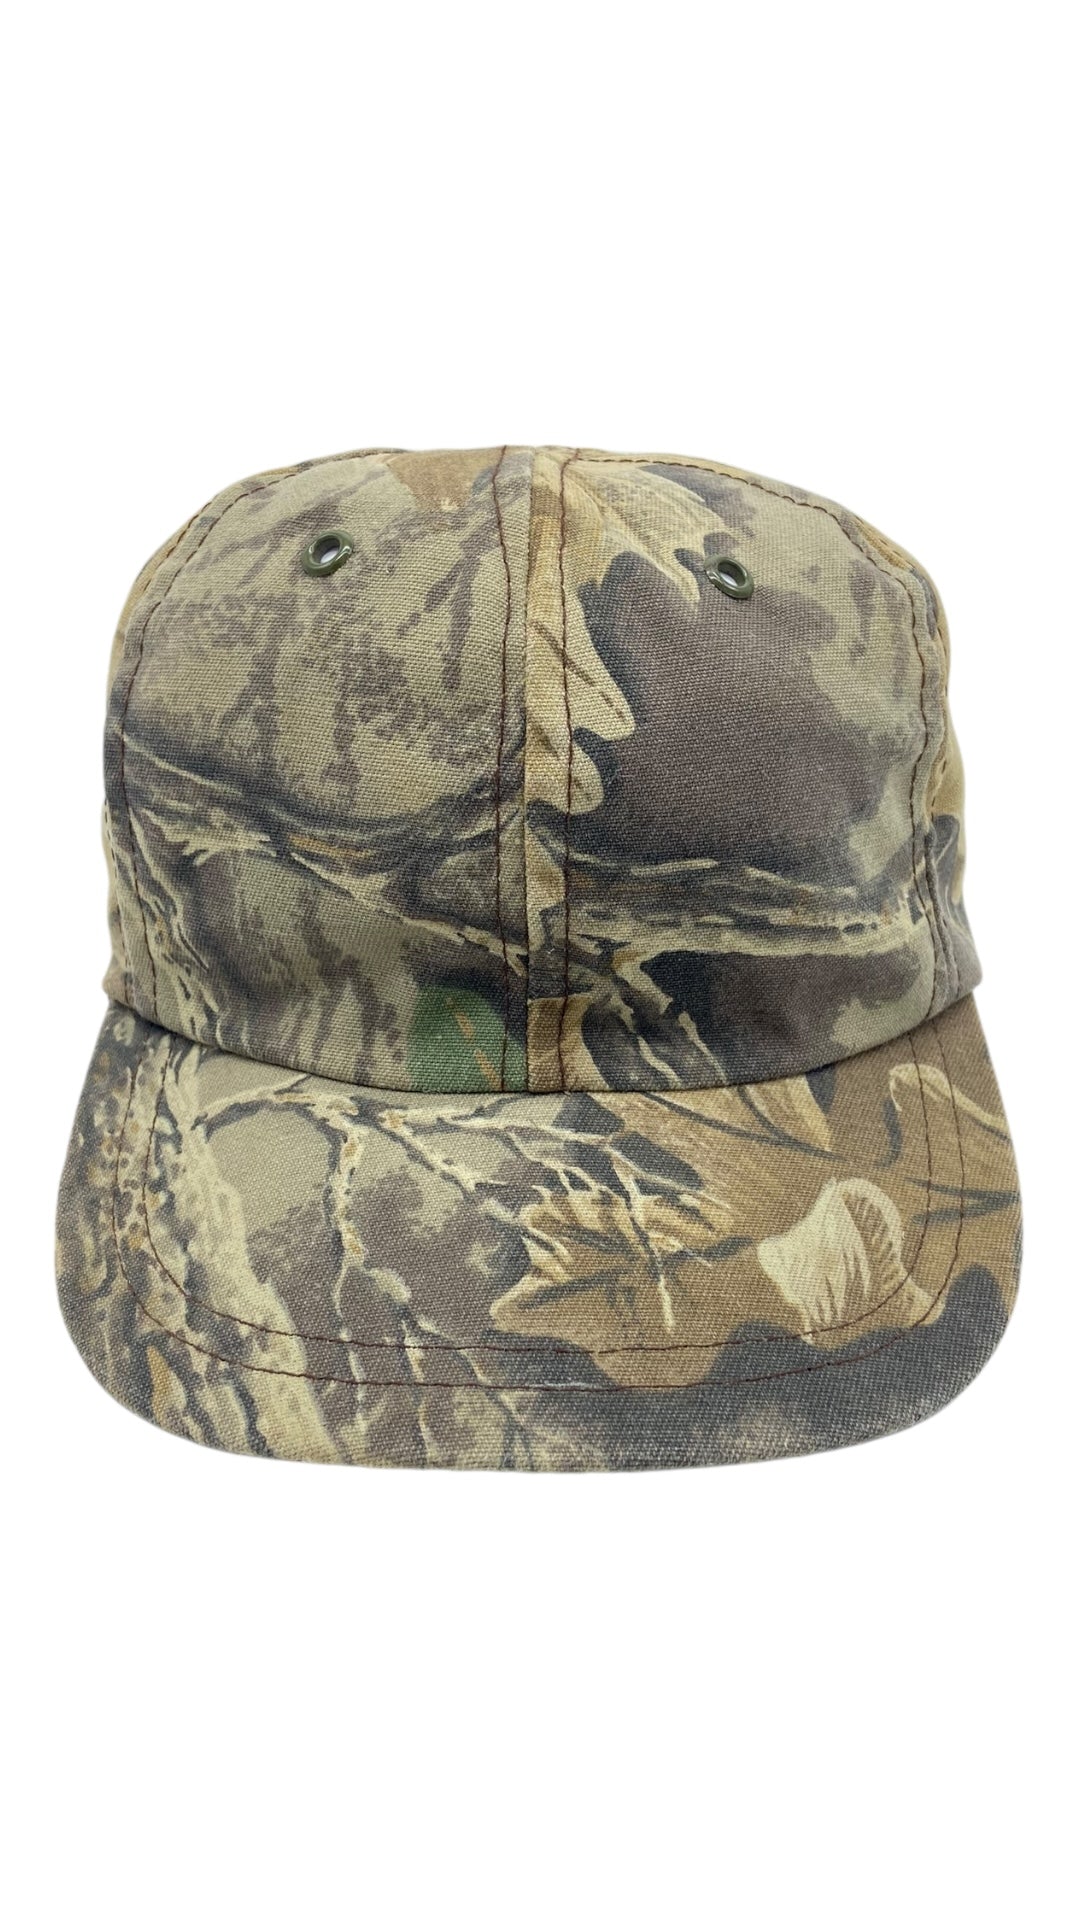 VTG Camouflage Snapback Hat